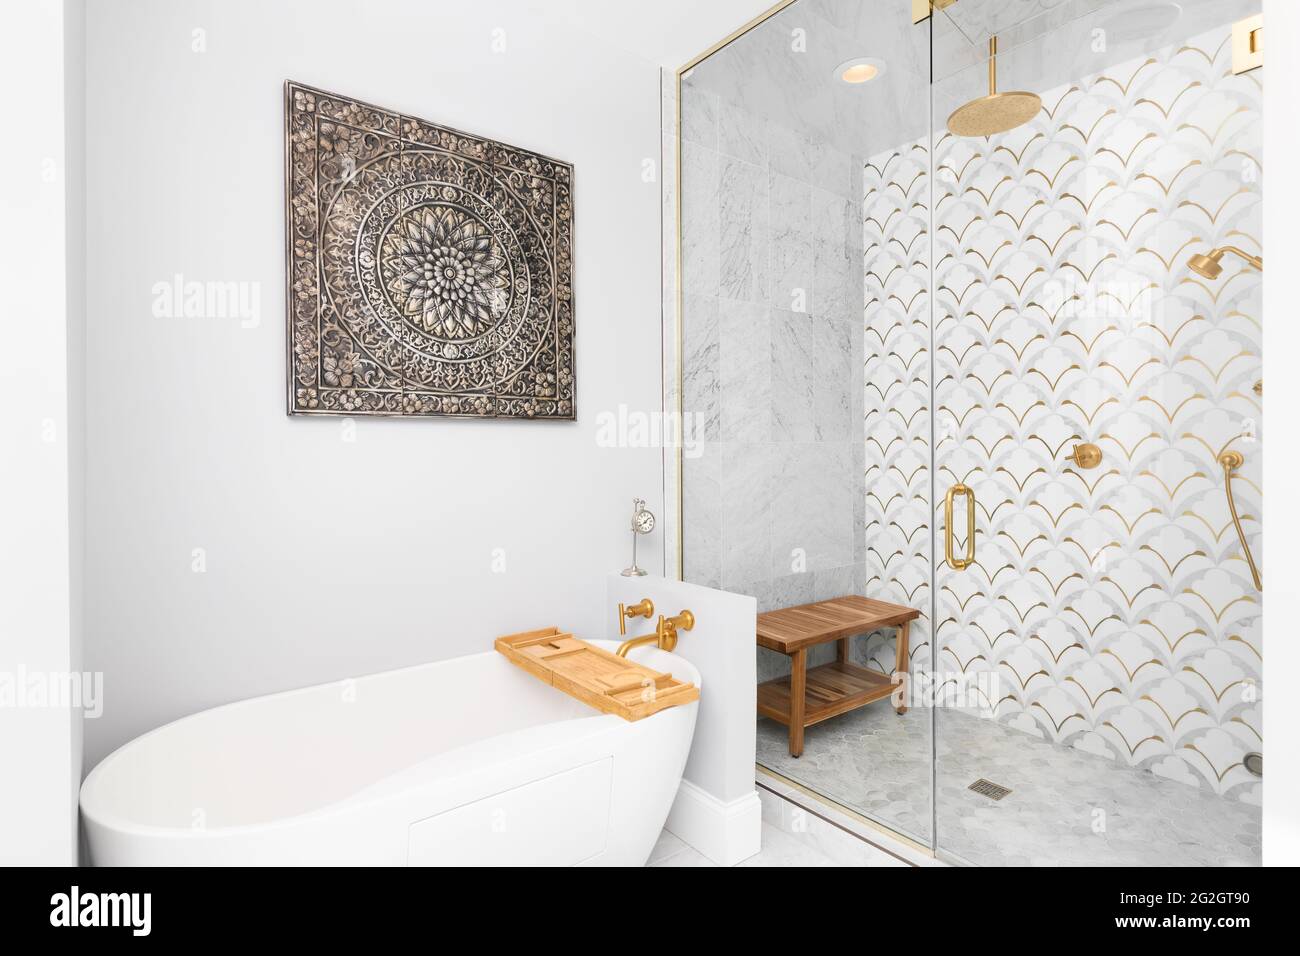 Una bella doccia e vasca piastrellata con piastrelle bianche e dorate sulle pareti, piastrelle di marmo mosaico sul pavimento, e soffione doccia e bulloneria dorati. Foto Stock